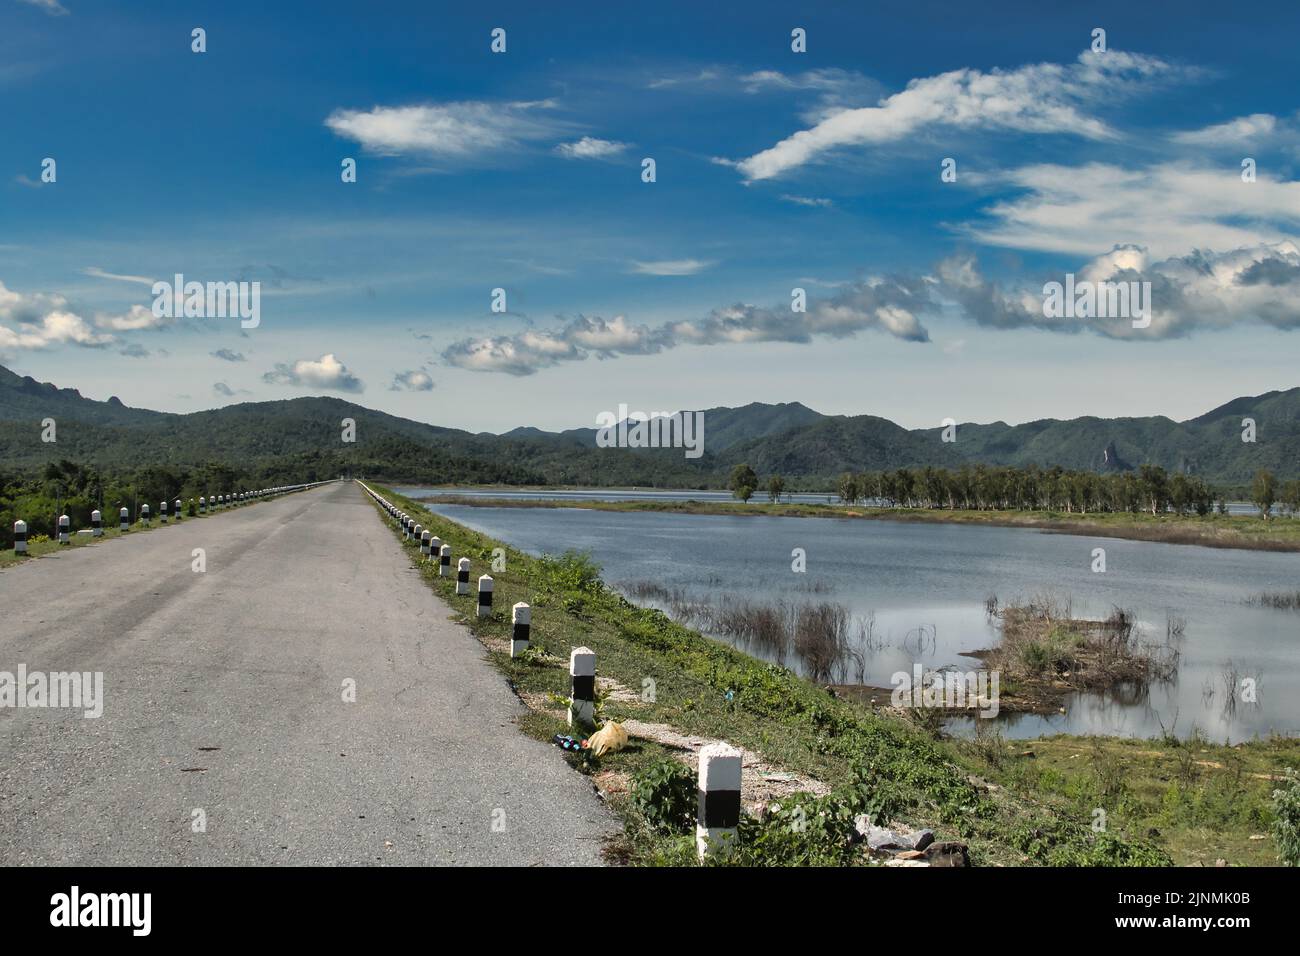 Carretera a lo largo de uno de los muchos embalses en la provincia montañosa de Lampang, Tailandia, no lejos de la ciudad de Li. Foto de stock